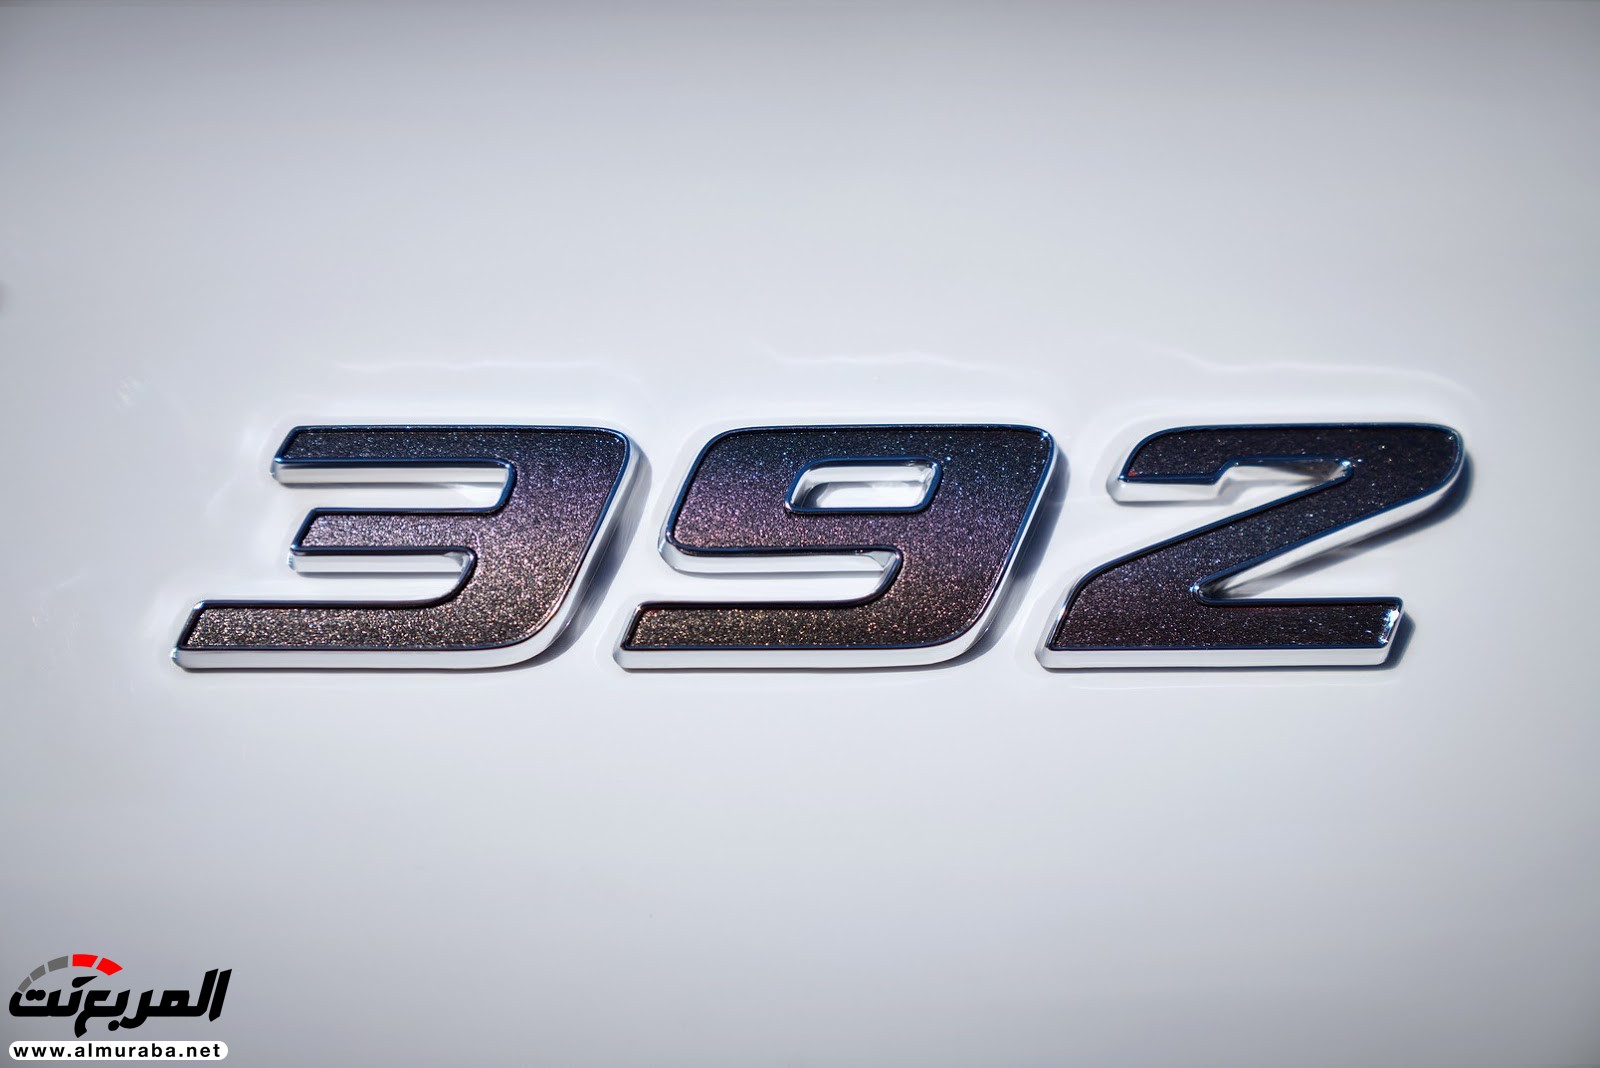 "دودج" دورانجو إس آر تي الجديدة كليا 2018 يكشف عنها بمحرك 475 حصان Dodge Durango SRT 169